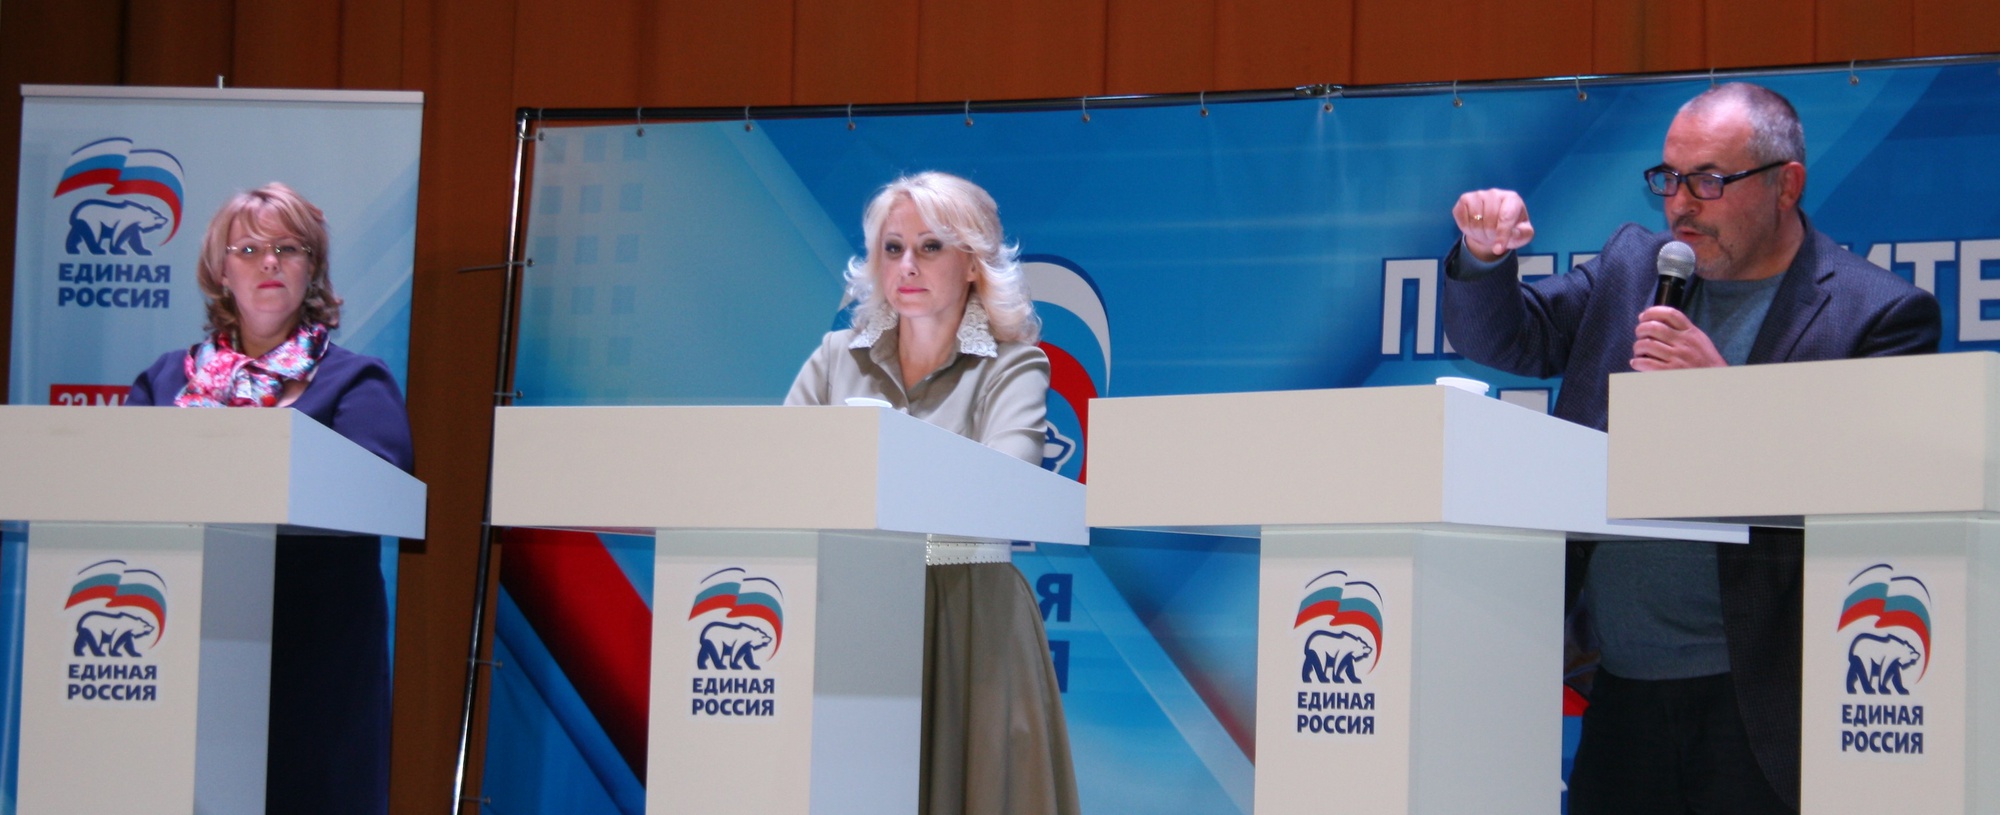   Дебаты участников предварительного голосования в регионах РФ. Московская область